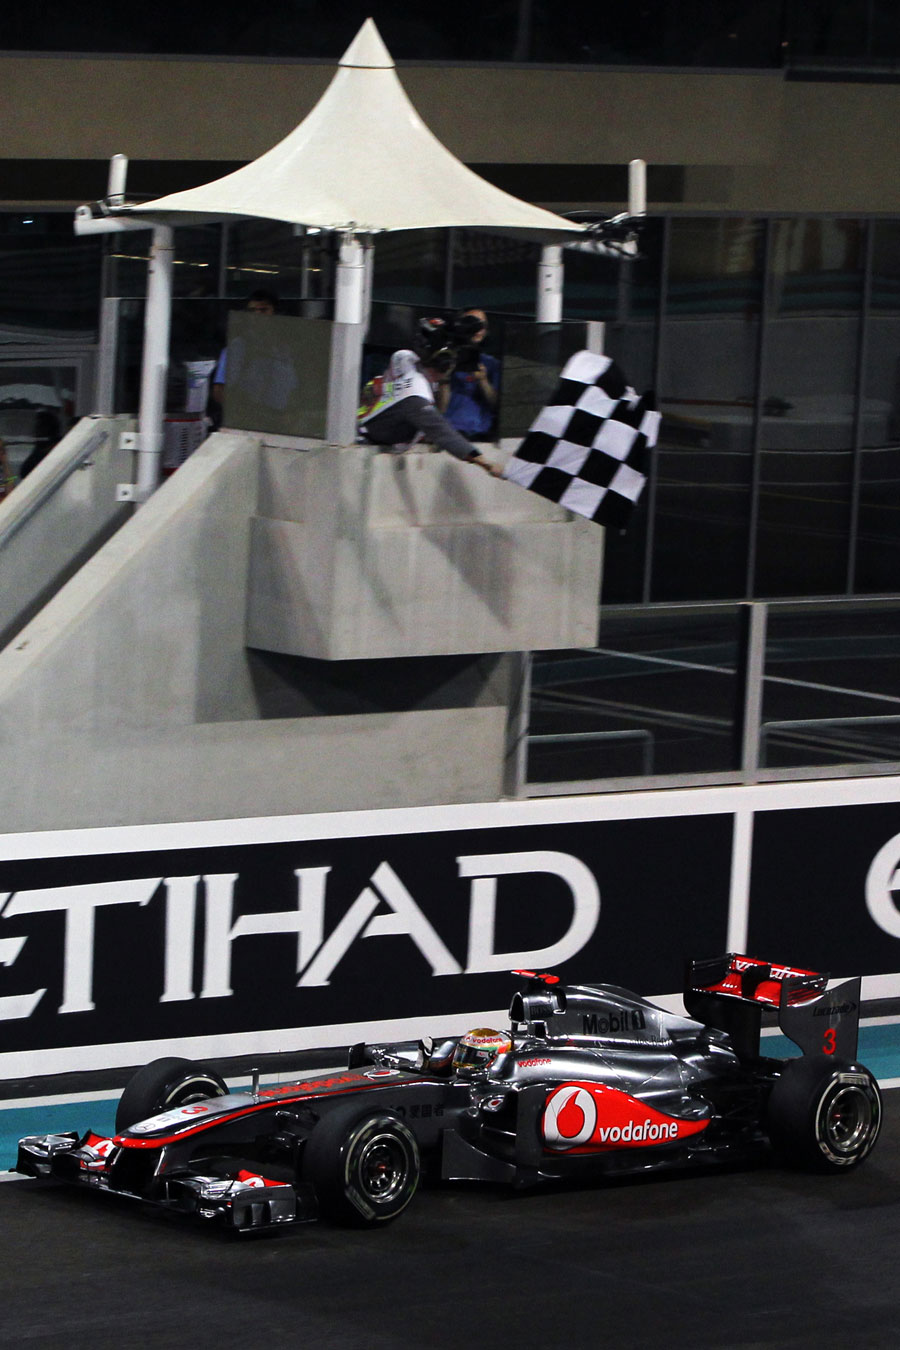 Lewis Hamilton celebrates as he takes the chequered flag